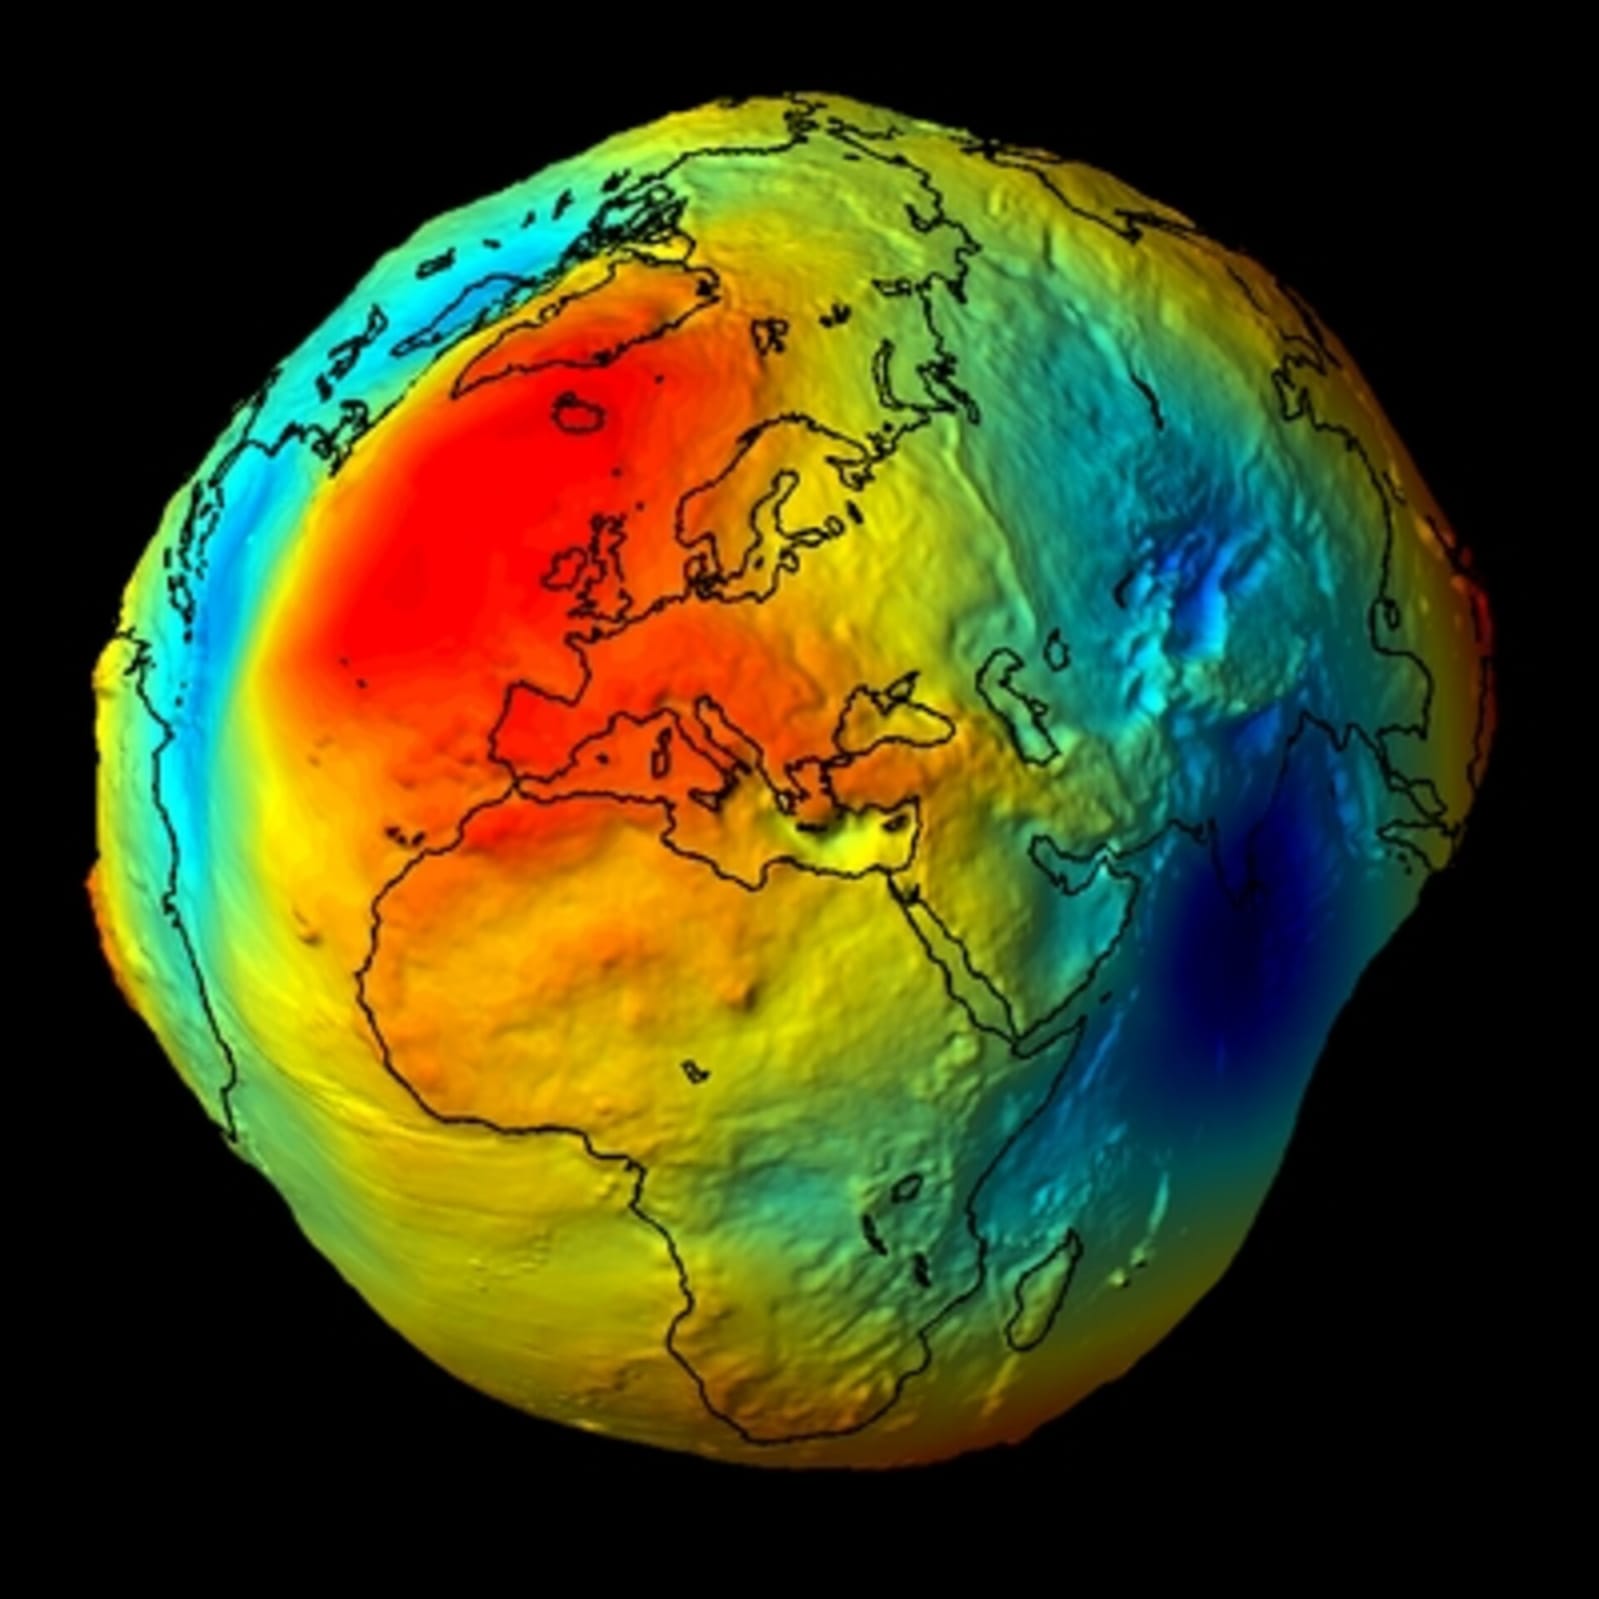 न पृथ्वी गोल है और न ही अंडाकार... असल में ऐसी है इसकी शेप! बहुत कम जानते हैं ये फैक्ट